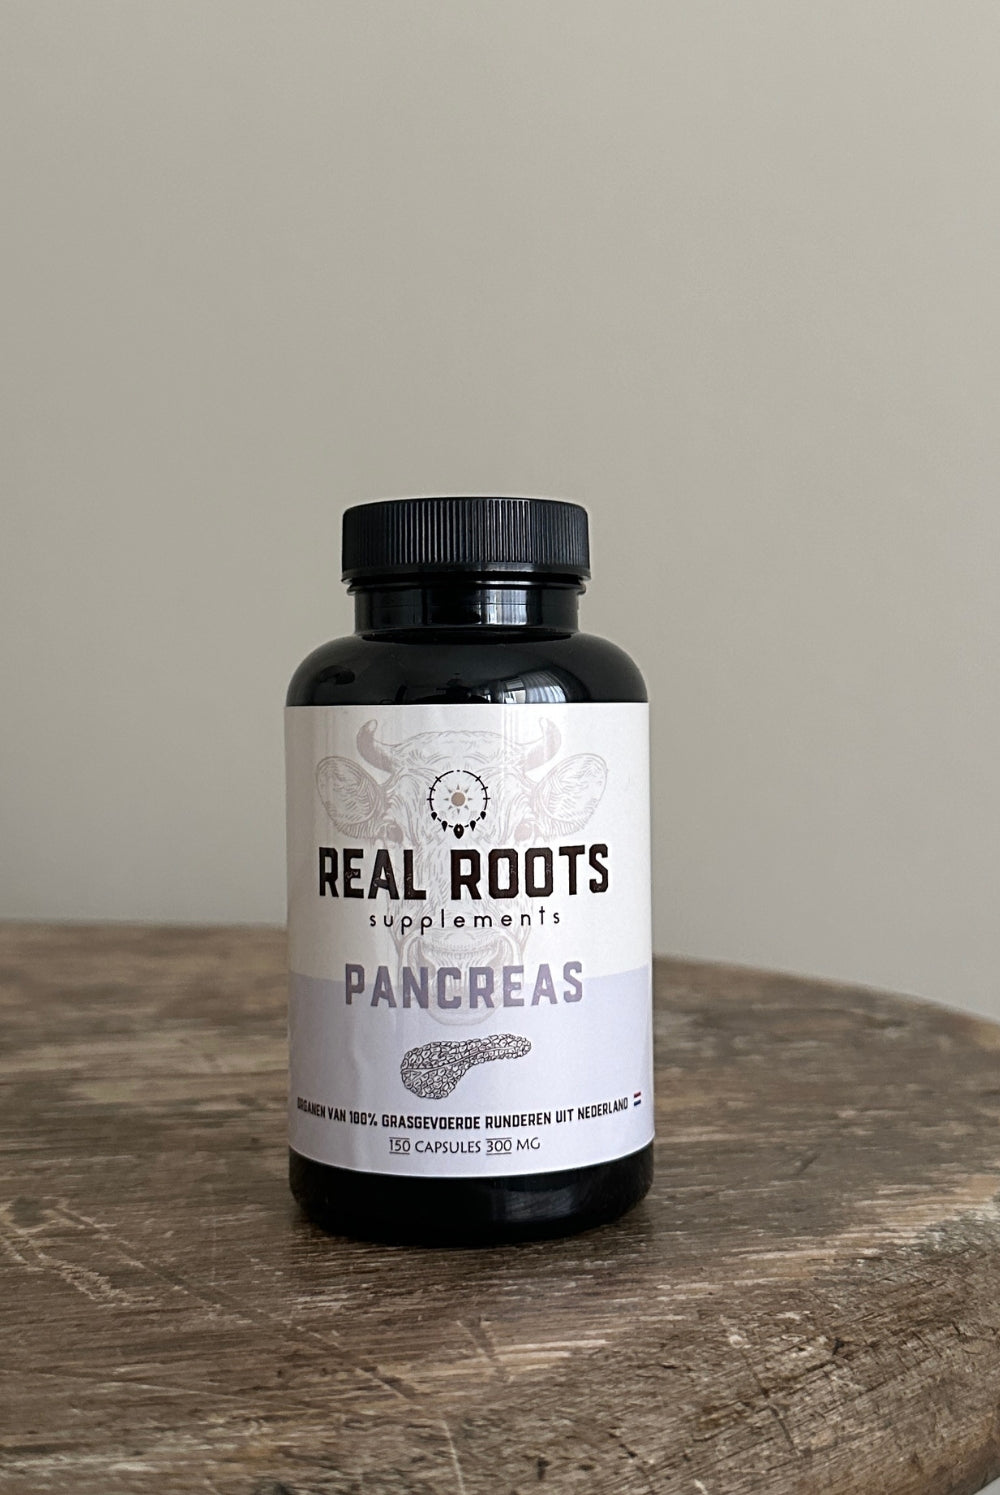 Real Roots Pancreas Orgaansupplementen